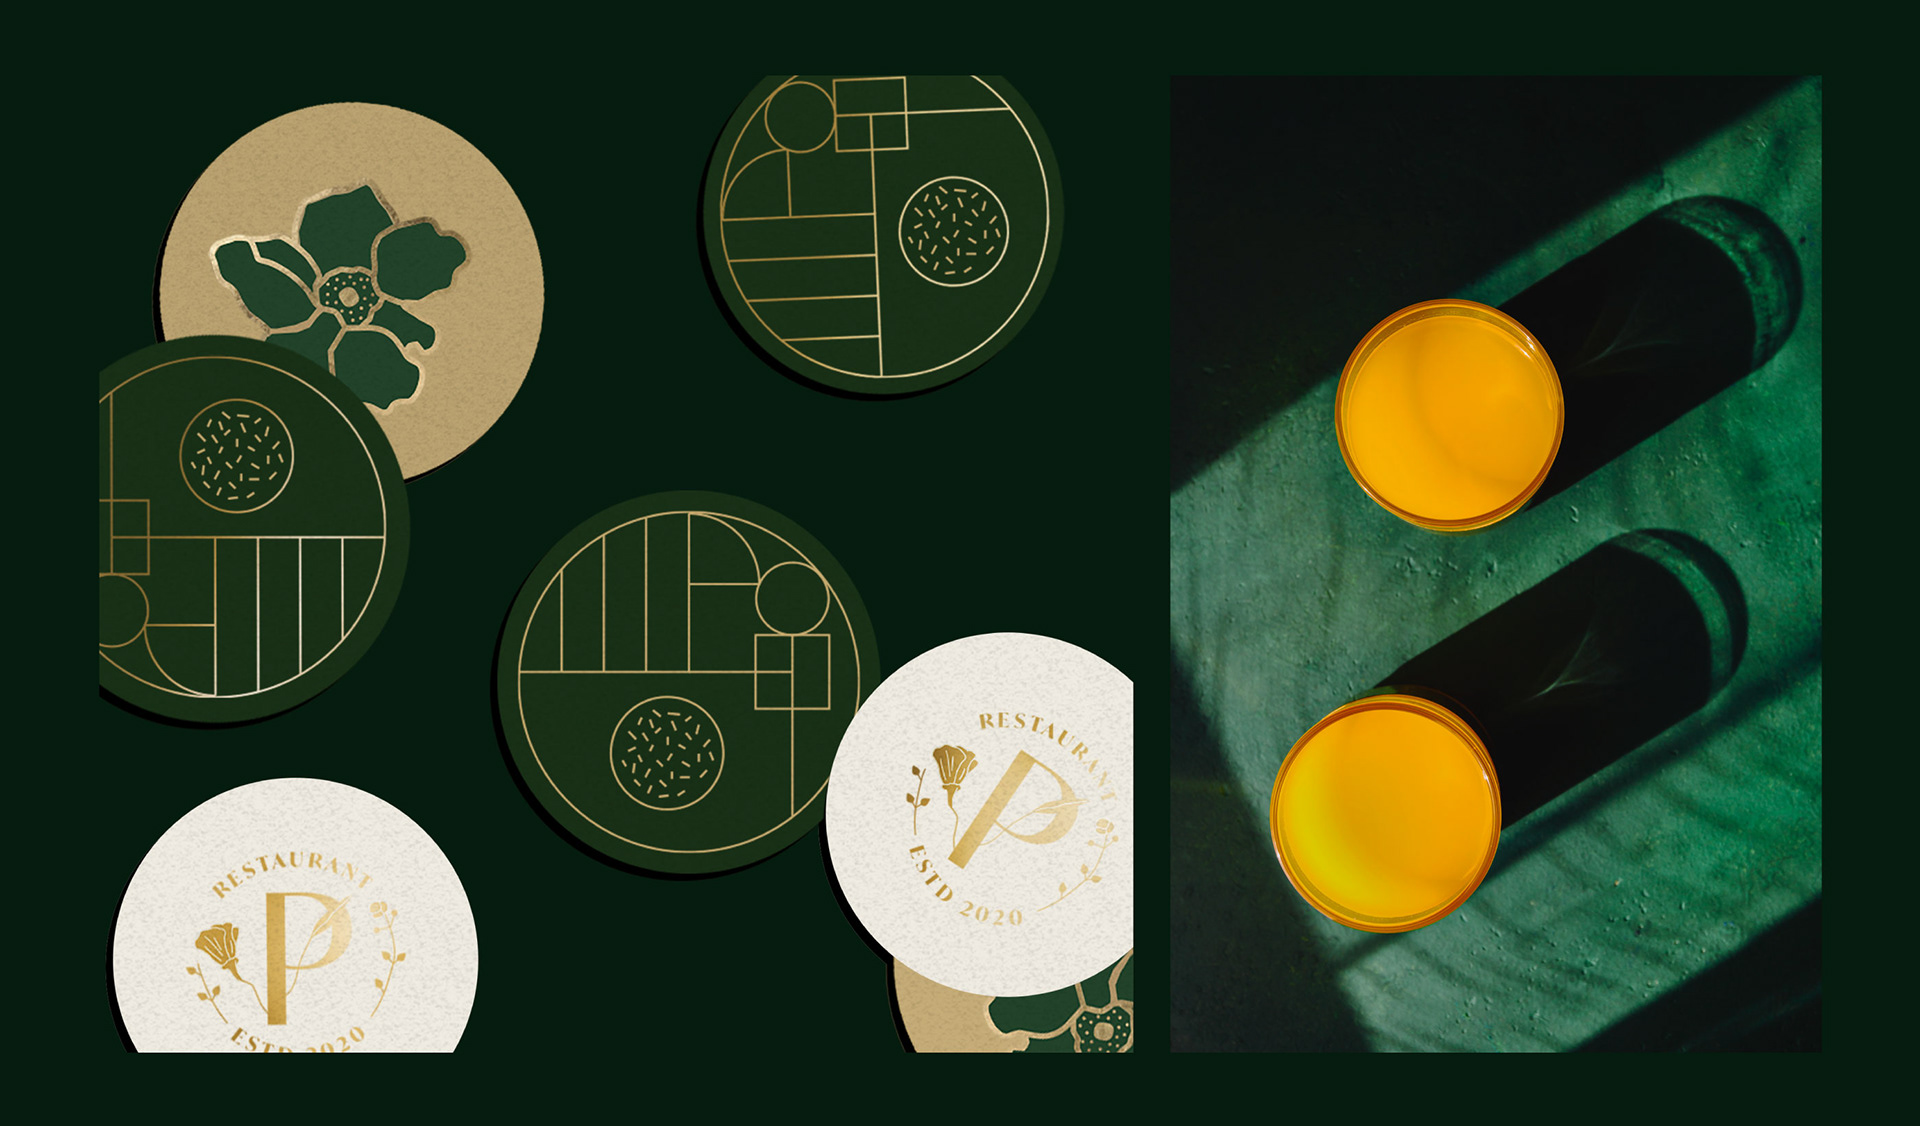 艺术指导植物品牌创意花卉平面设计极简主义公园餐厅视觉形象-01.jpg